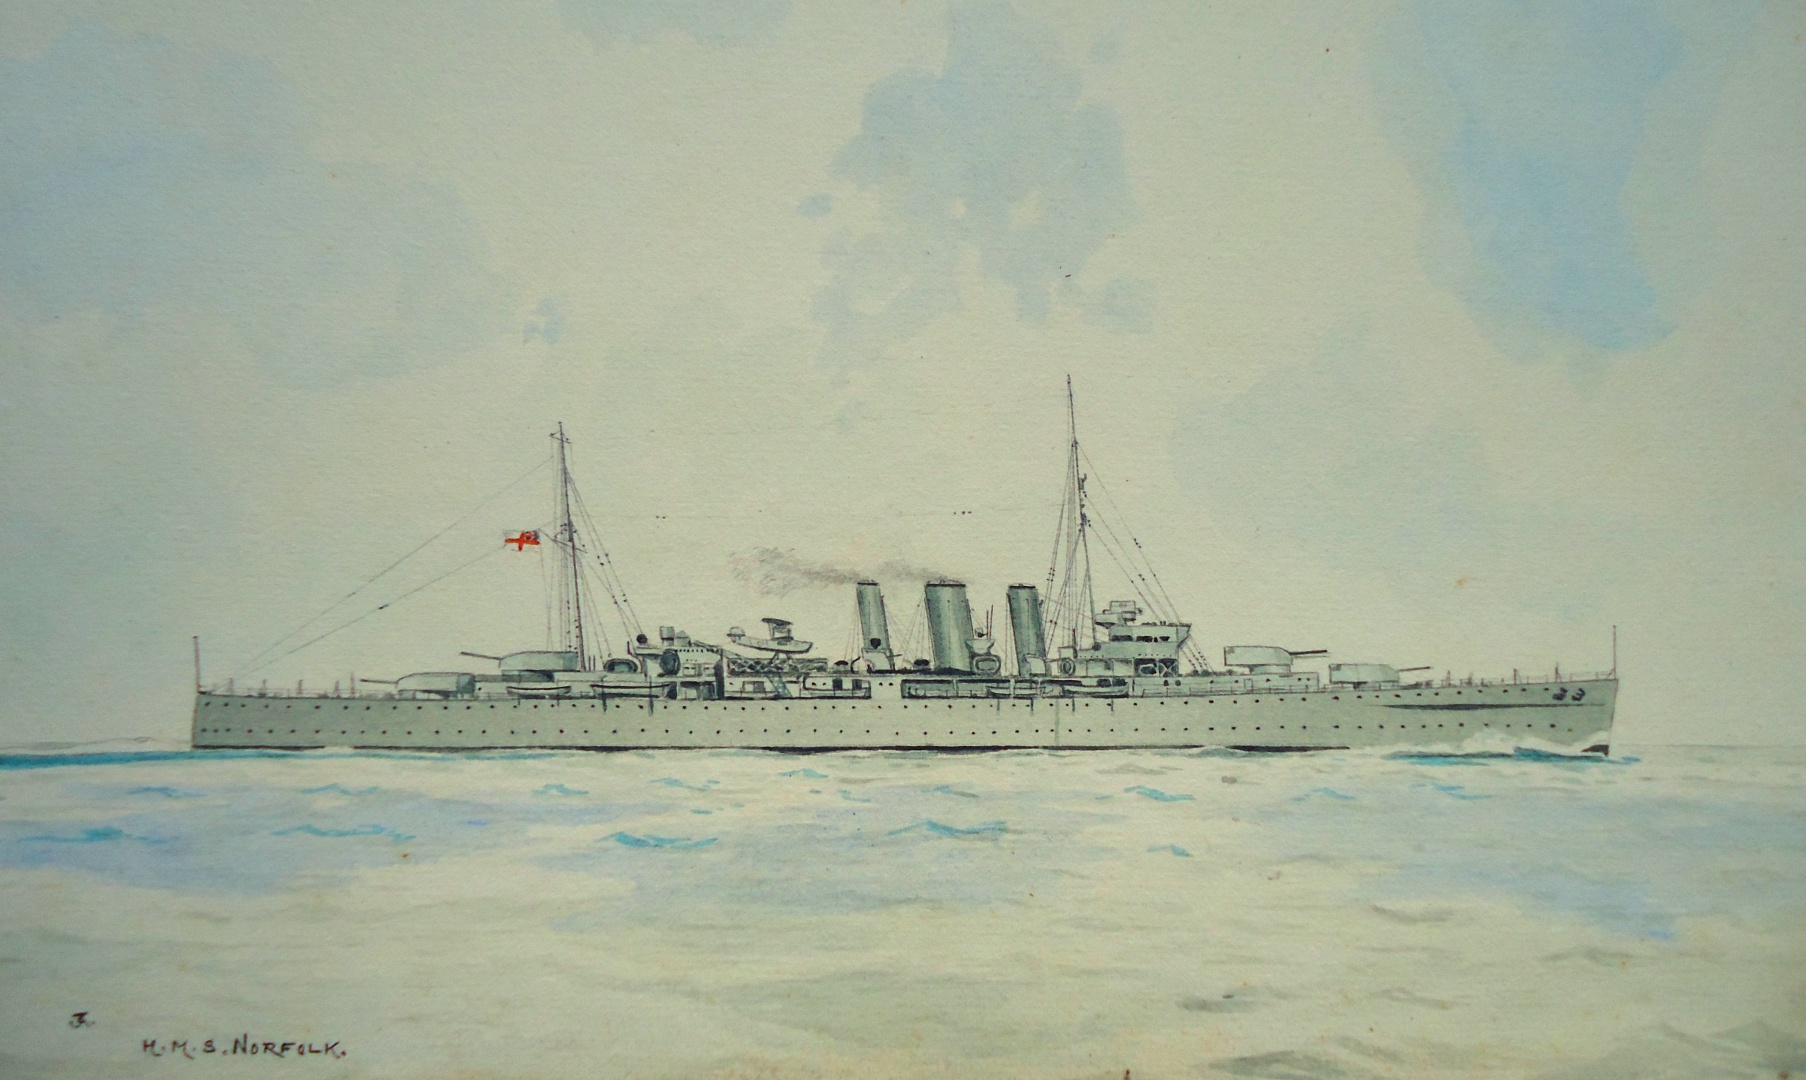 HMS NORFOLK - heavy cruiser